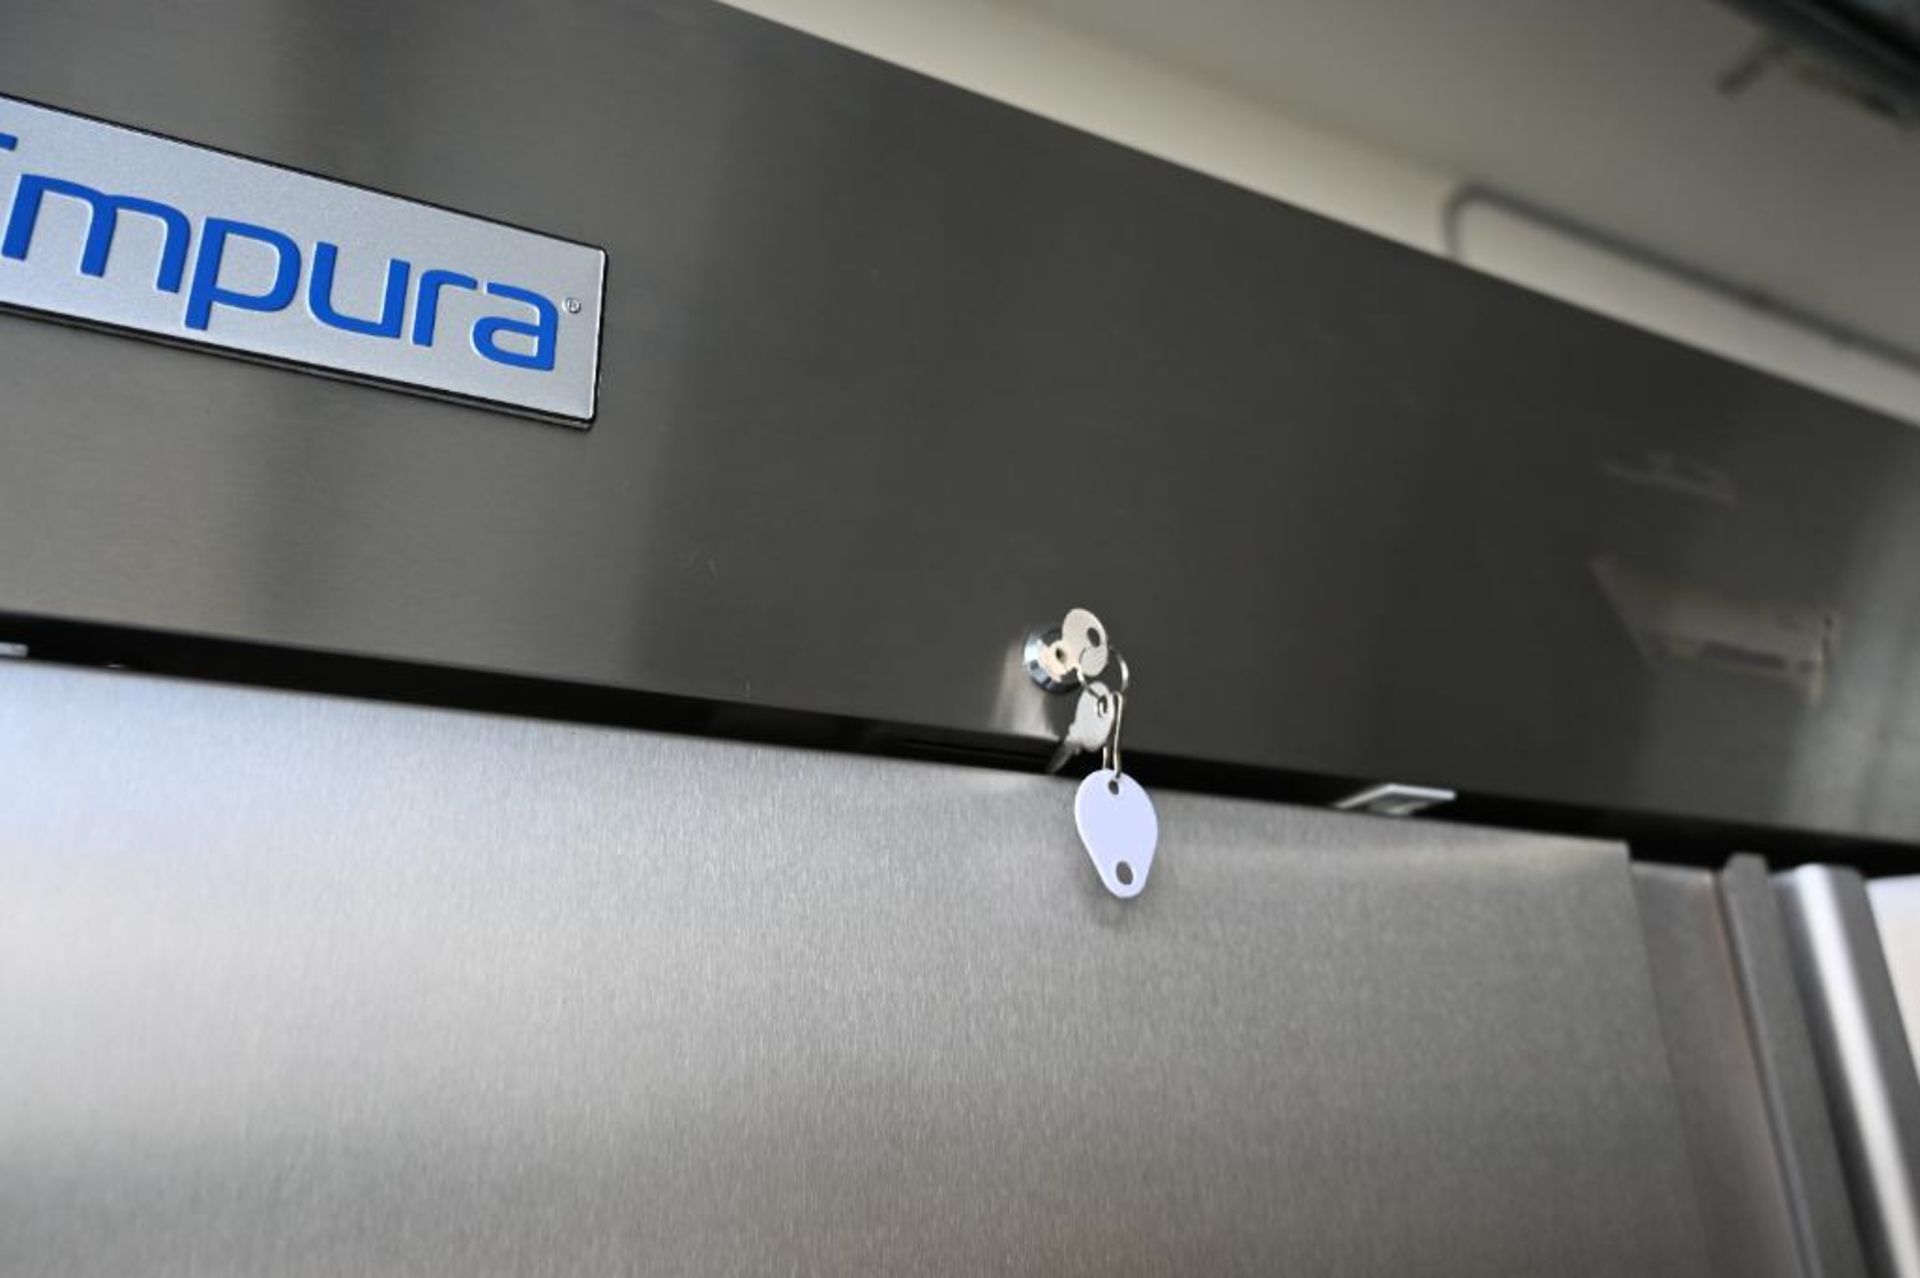 Empura model EKB54R Stainless Commercial Refrigerator - Image 6 of 14